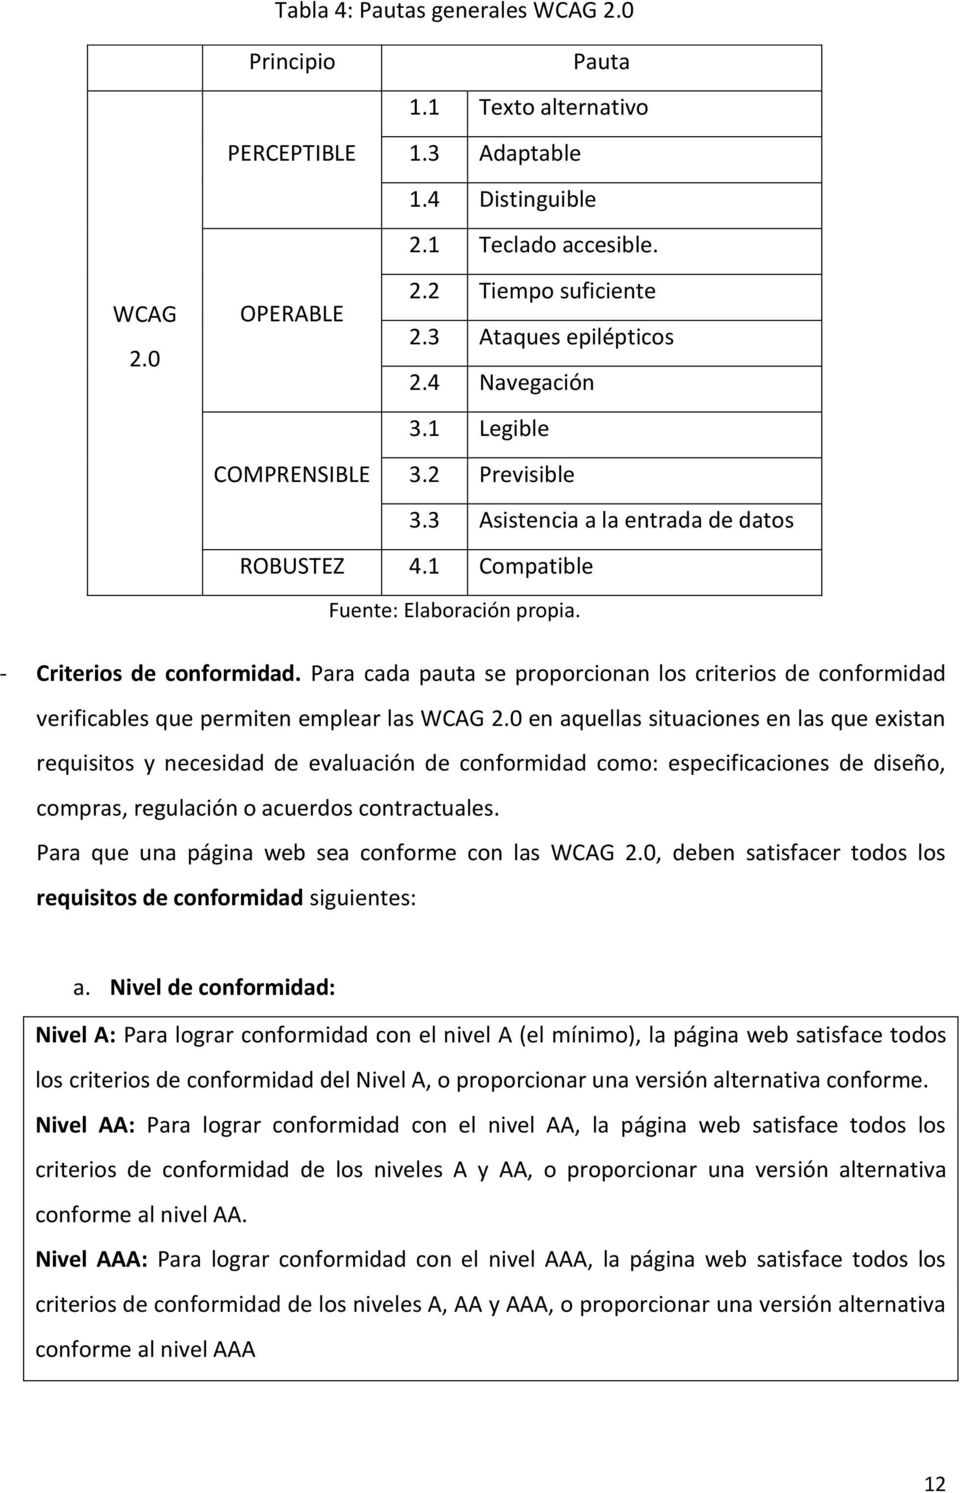 Para cada pauta se proporcionan los criterios de conformidad verificables que permiten emplear las WCAG 2.